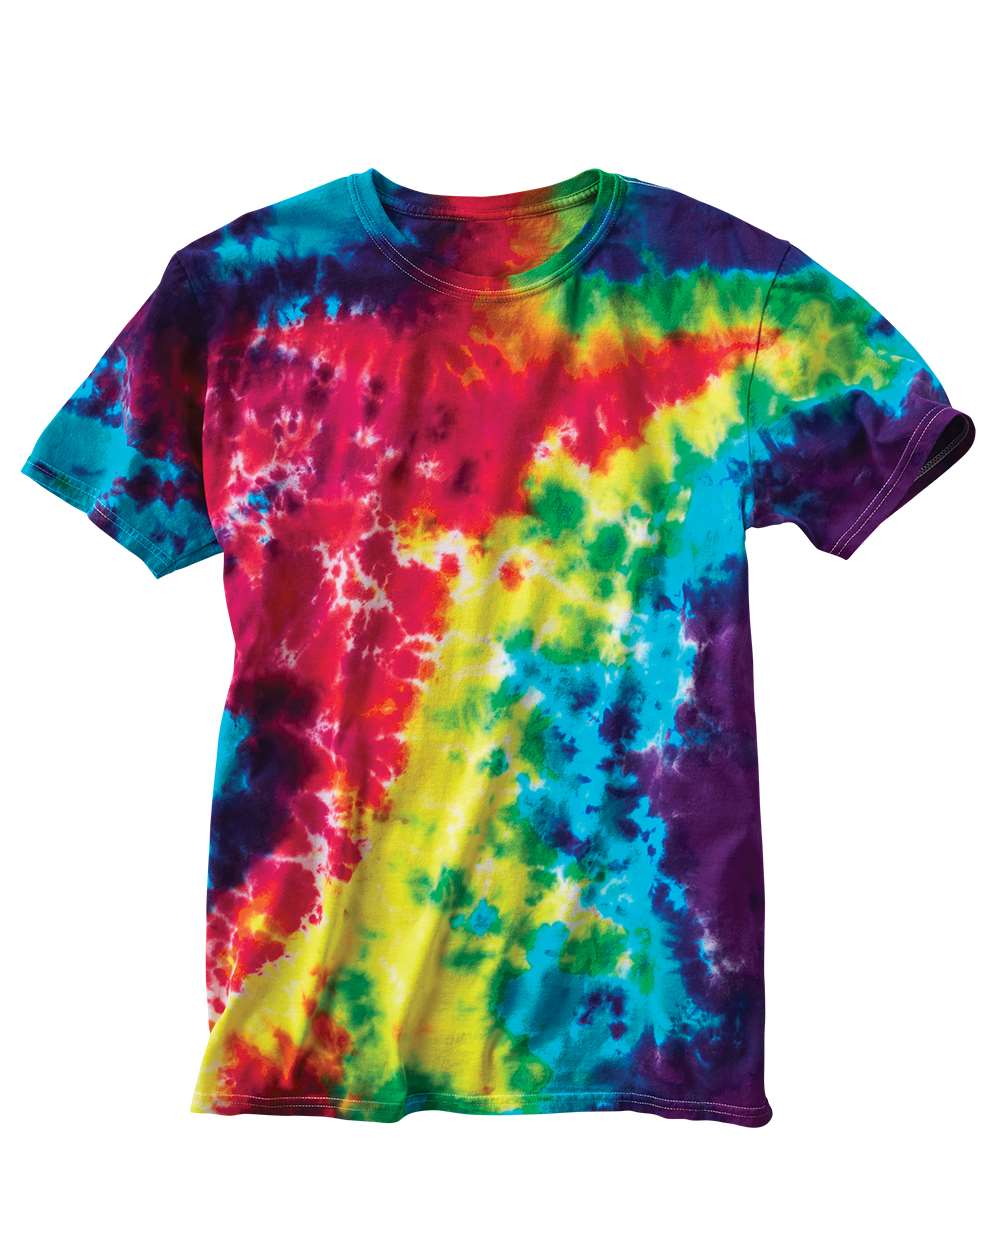 Dyenomite - Slushie Crinkle Tie-Dyed T-Shirt - 640VR